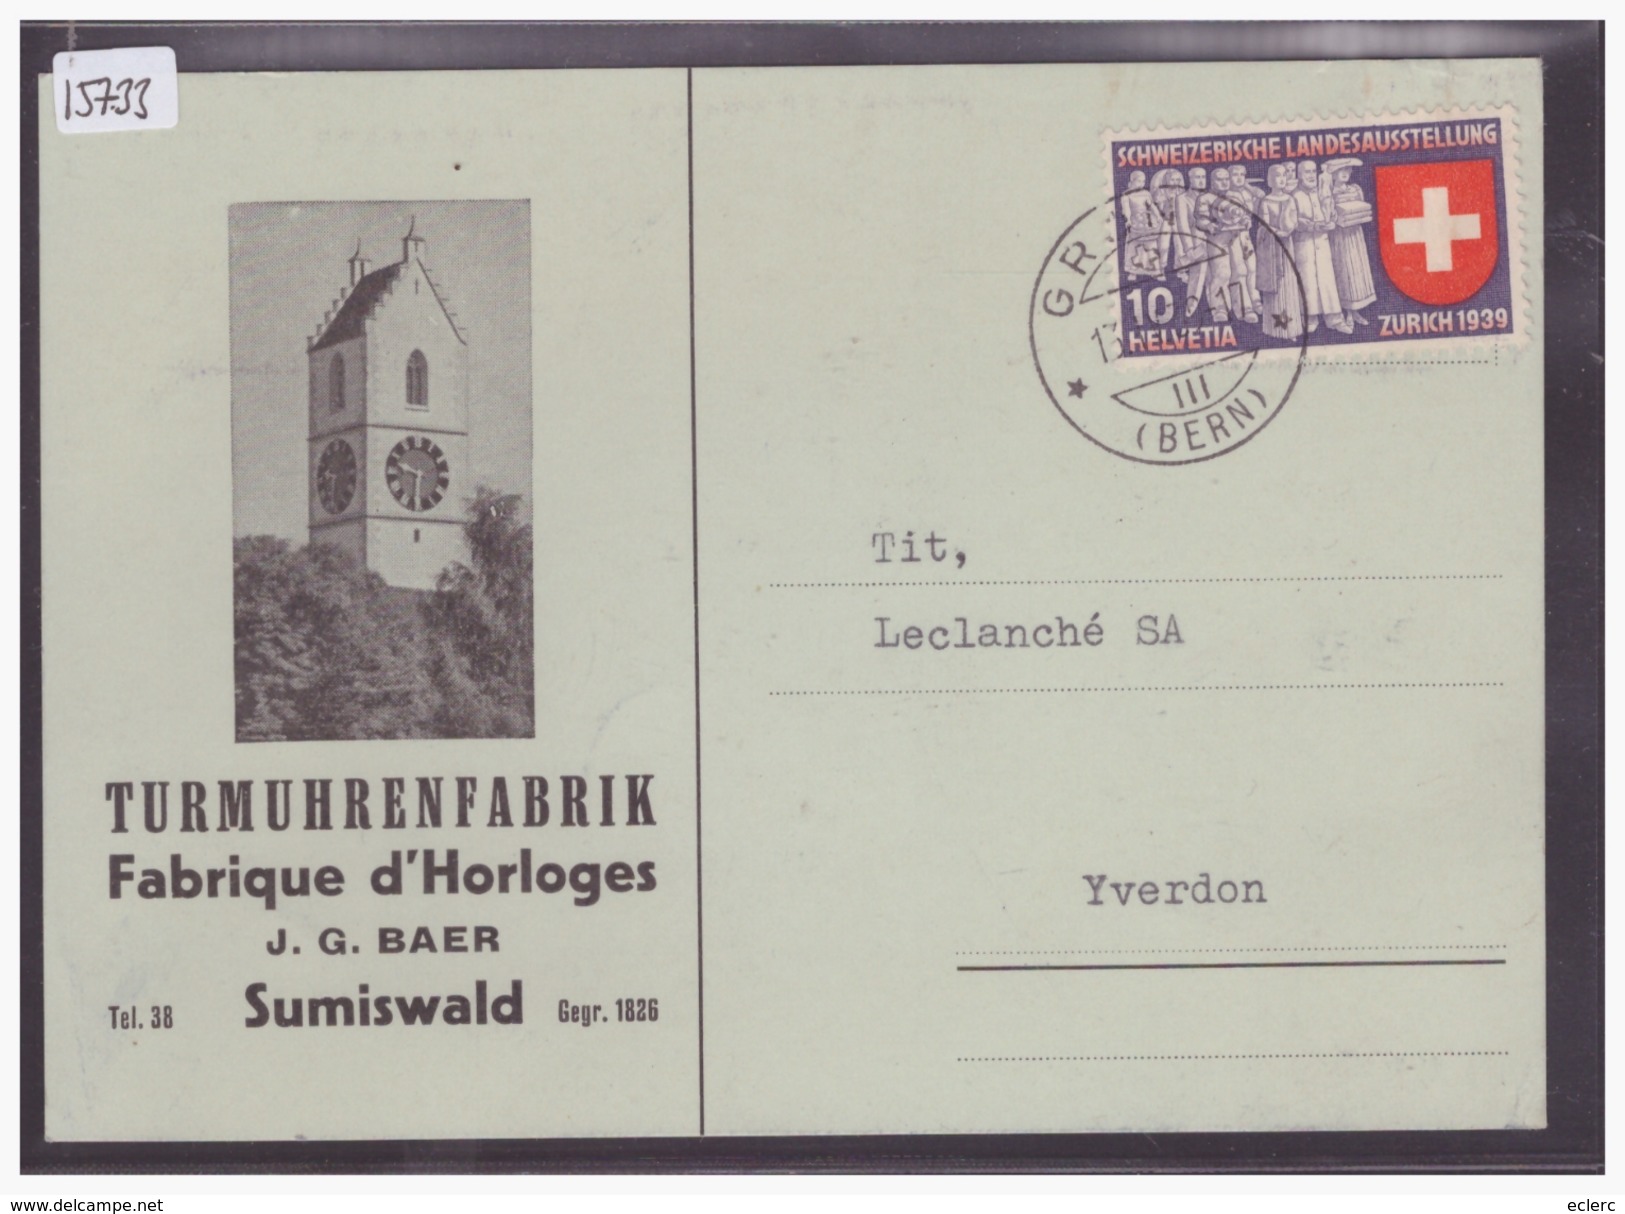 GRÖSSE 10x15cm - SUMISWALD - TURMUHRENFABRIK J.G. BAER - HORLOGERIE - TB - Sumiswald